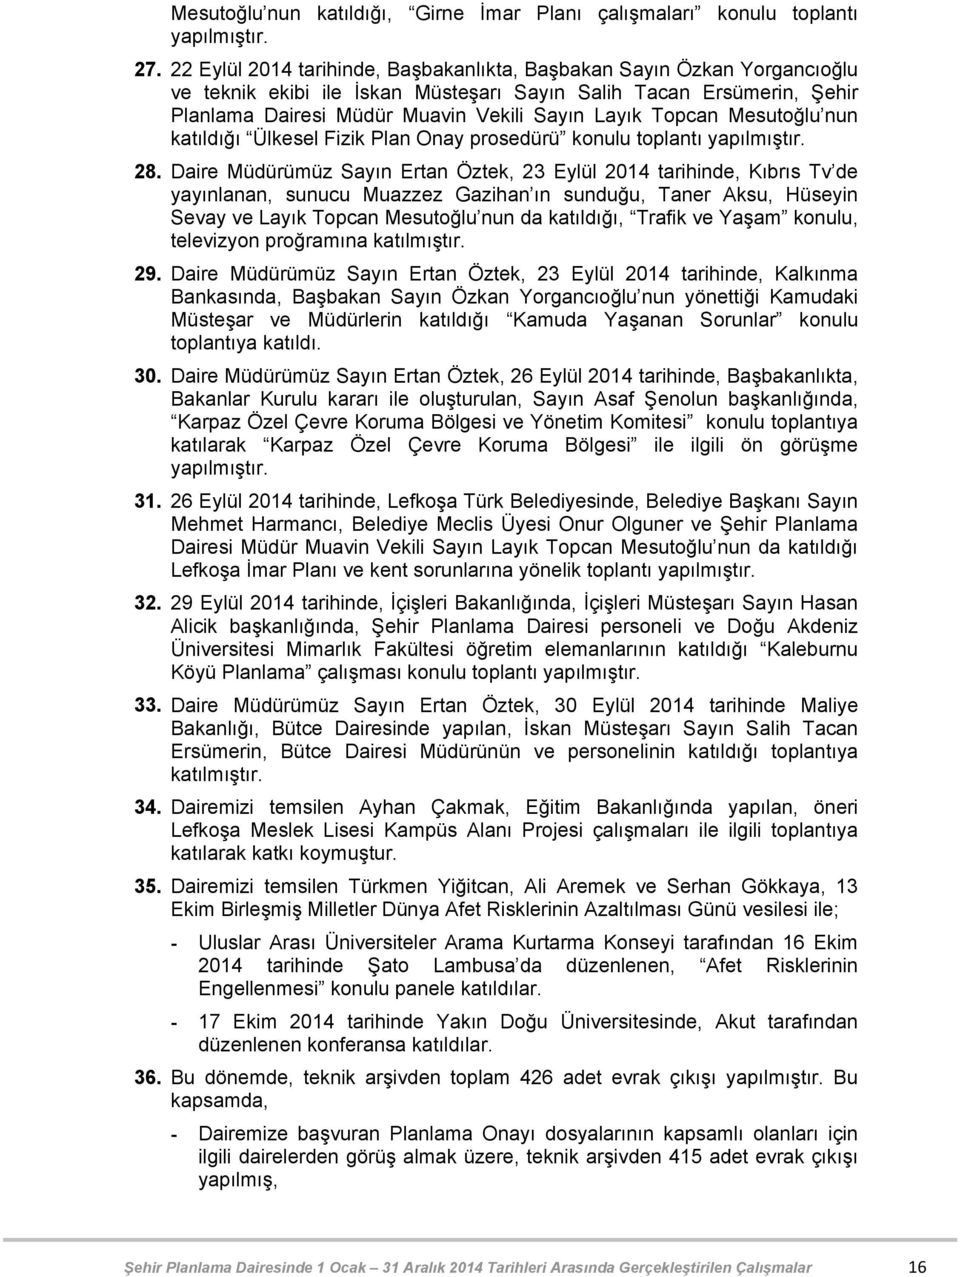 Topcan Mesutoğlu nun katıldığı Ülkesel Fizik Plan Onay prosedürü konulu toplantı 28.